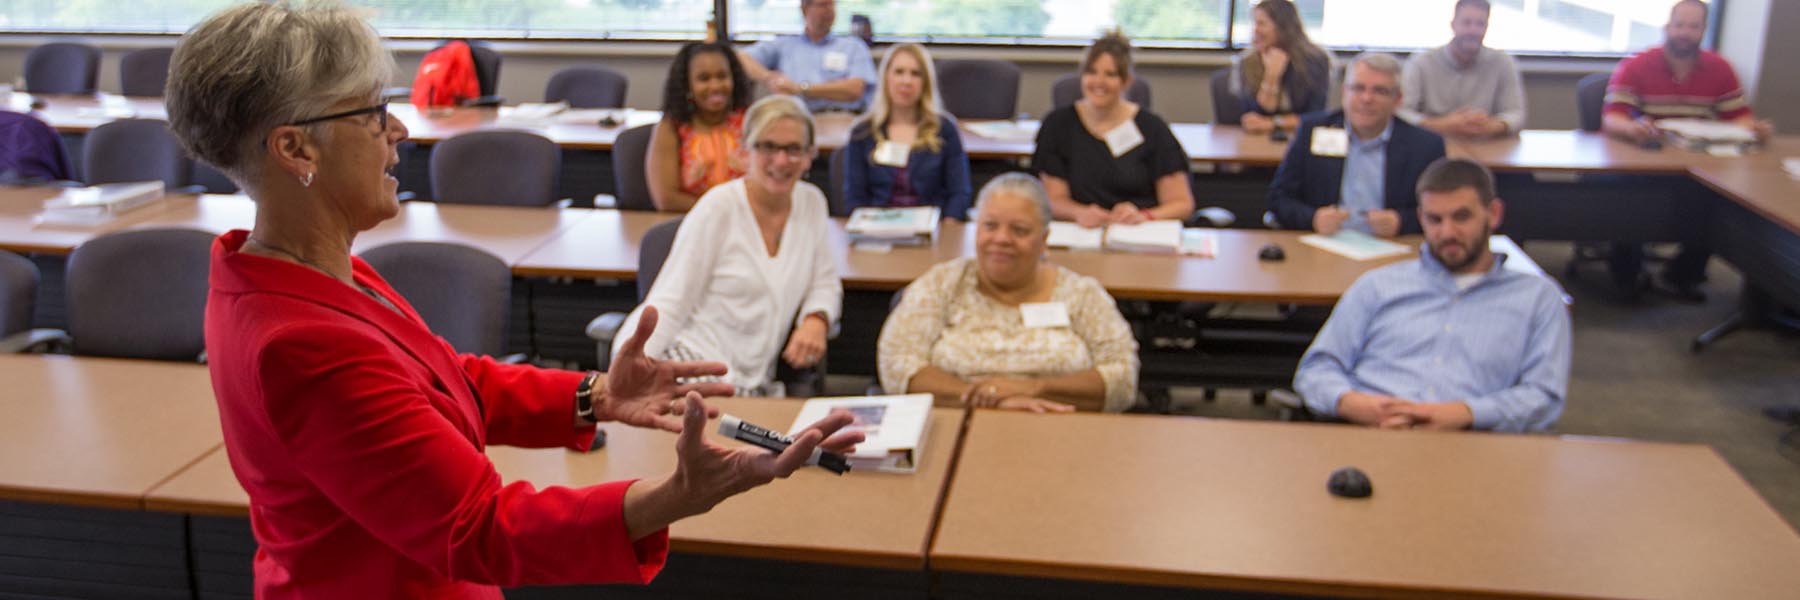 An executive education teacher speaks to a class.